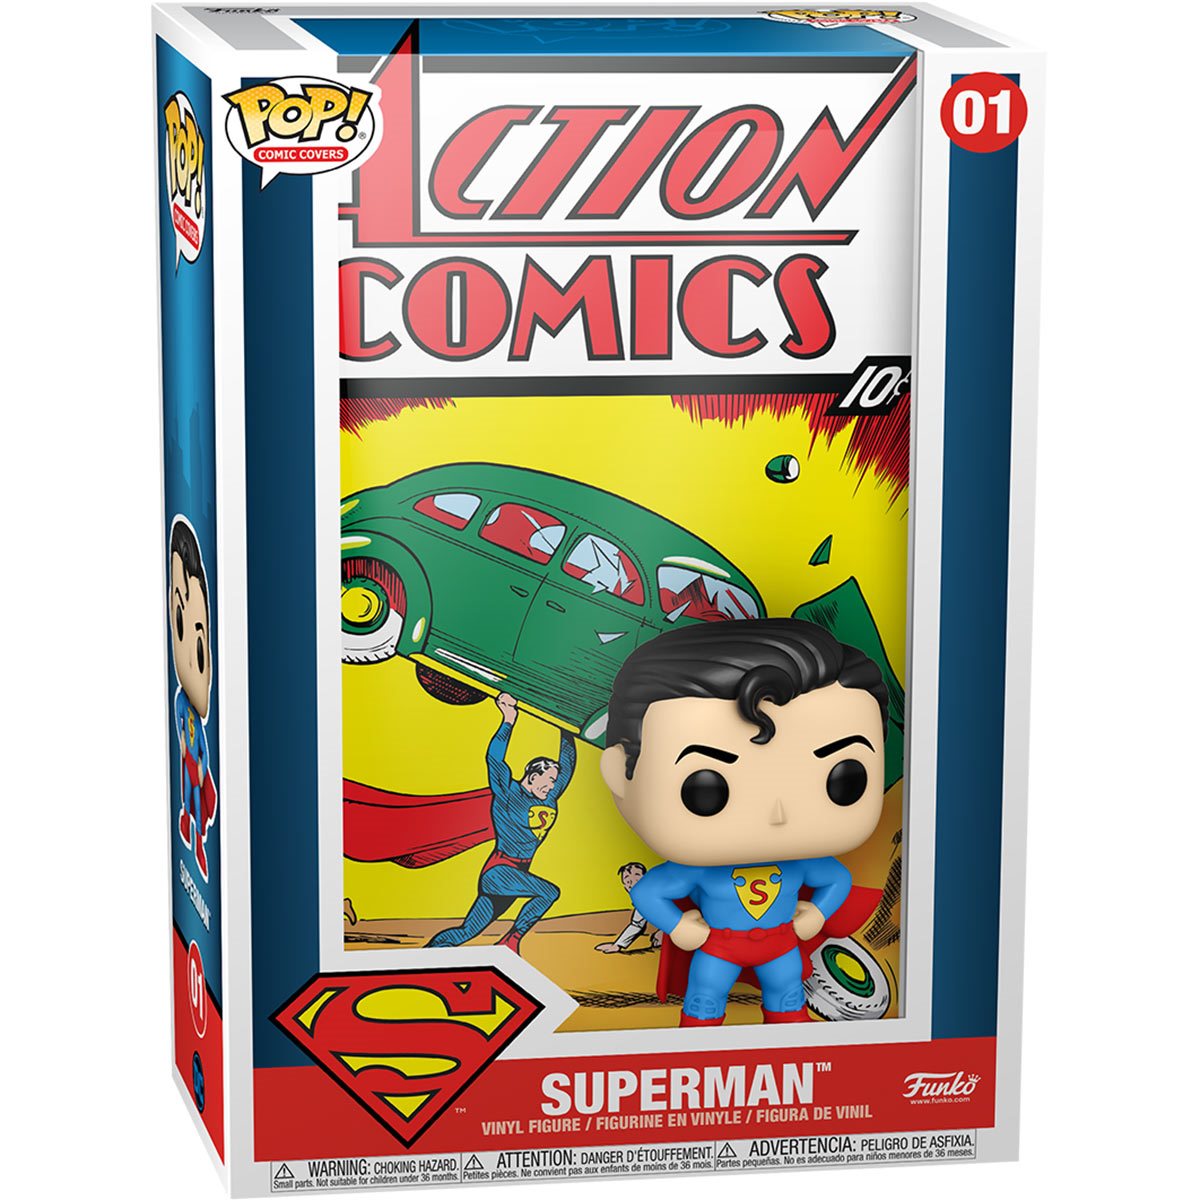 Pop! Comic Covers 01 Action Comics No. 1 Superman